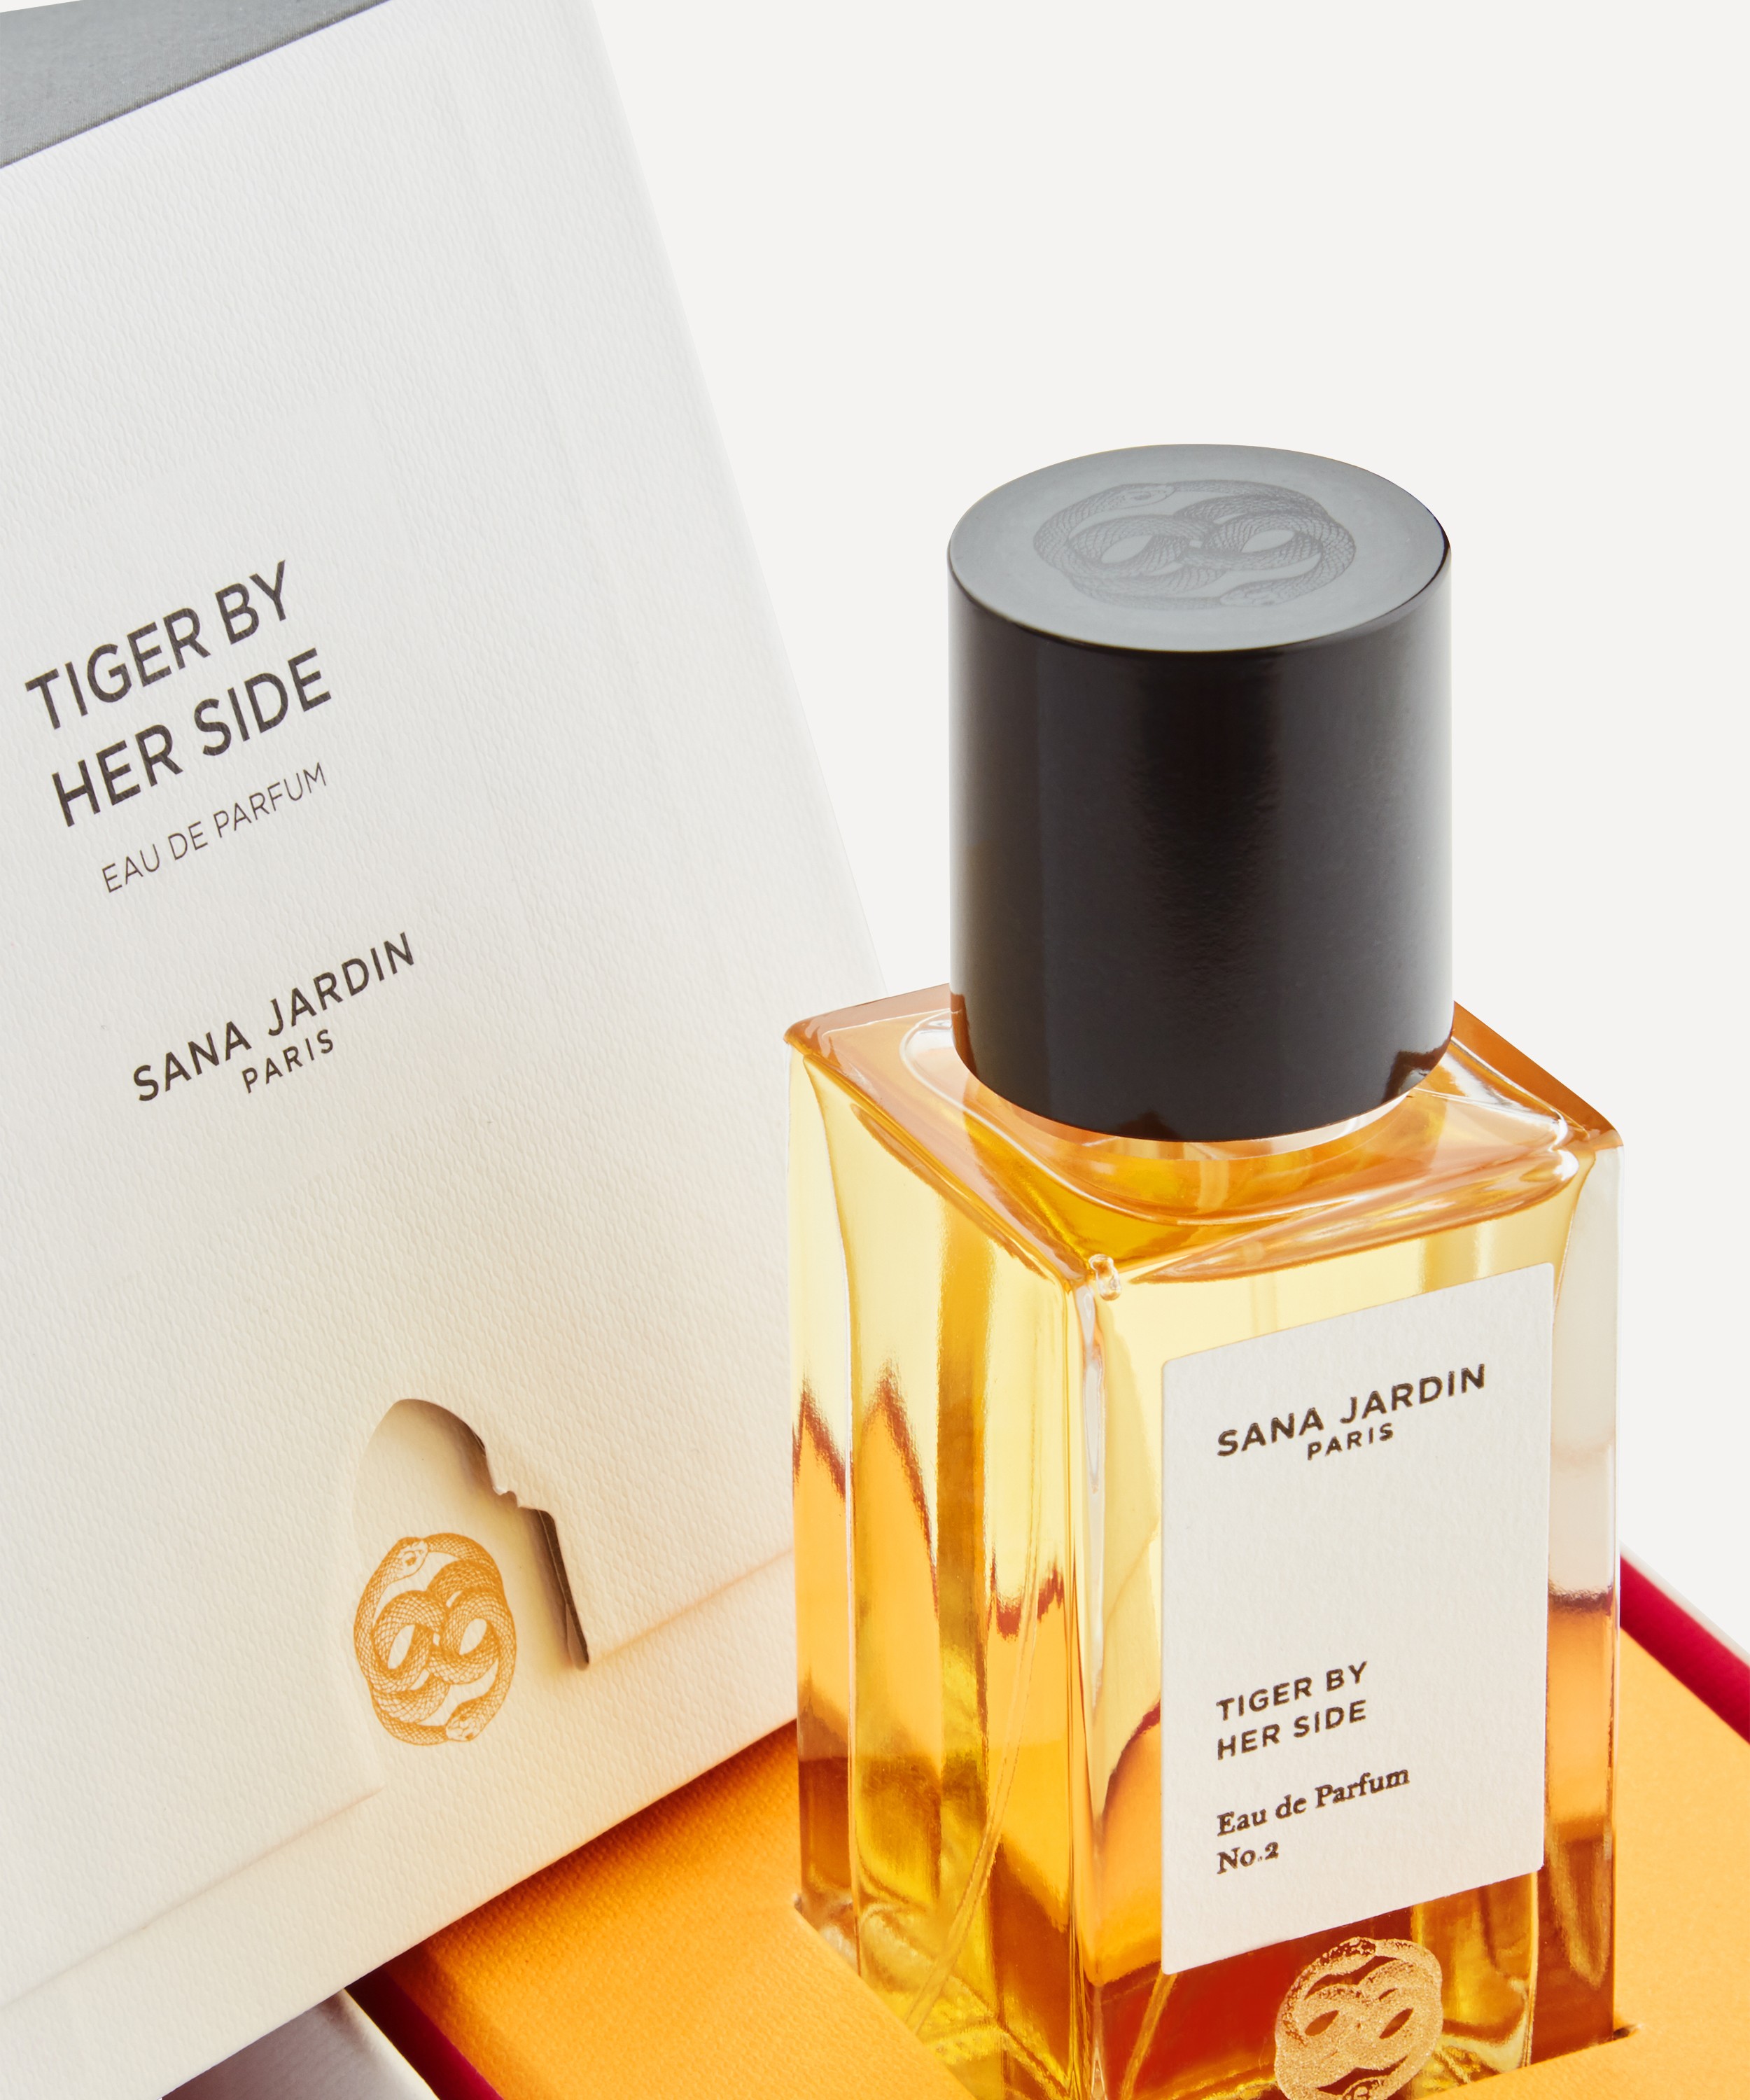 Sana Jardin - Tiger By Her Side Eau de Parfum No. 2 50ml image number 2